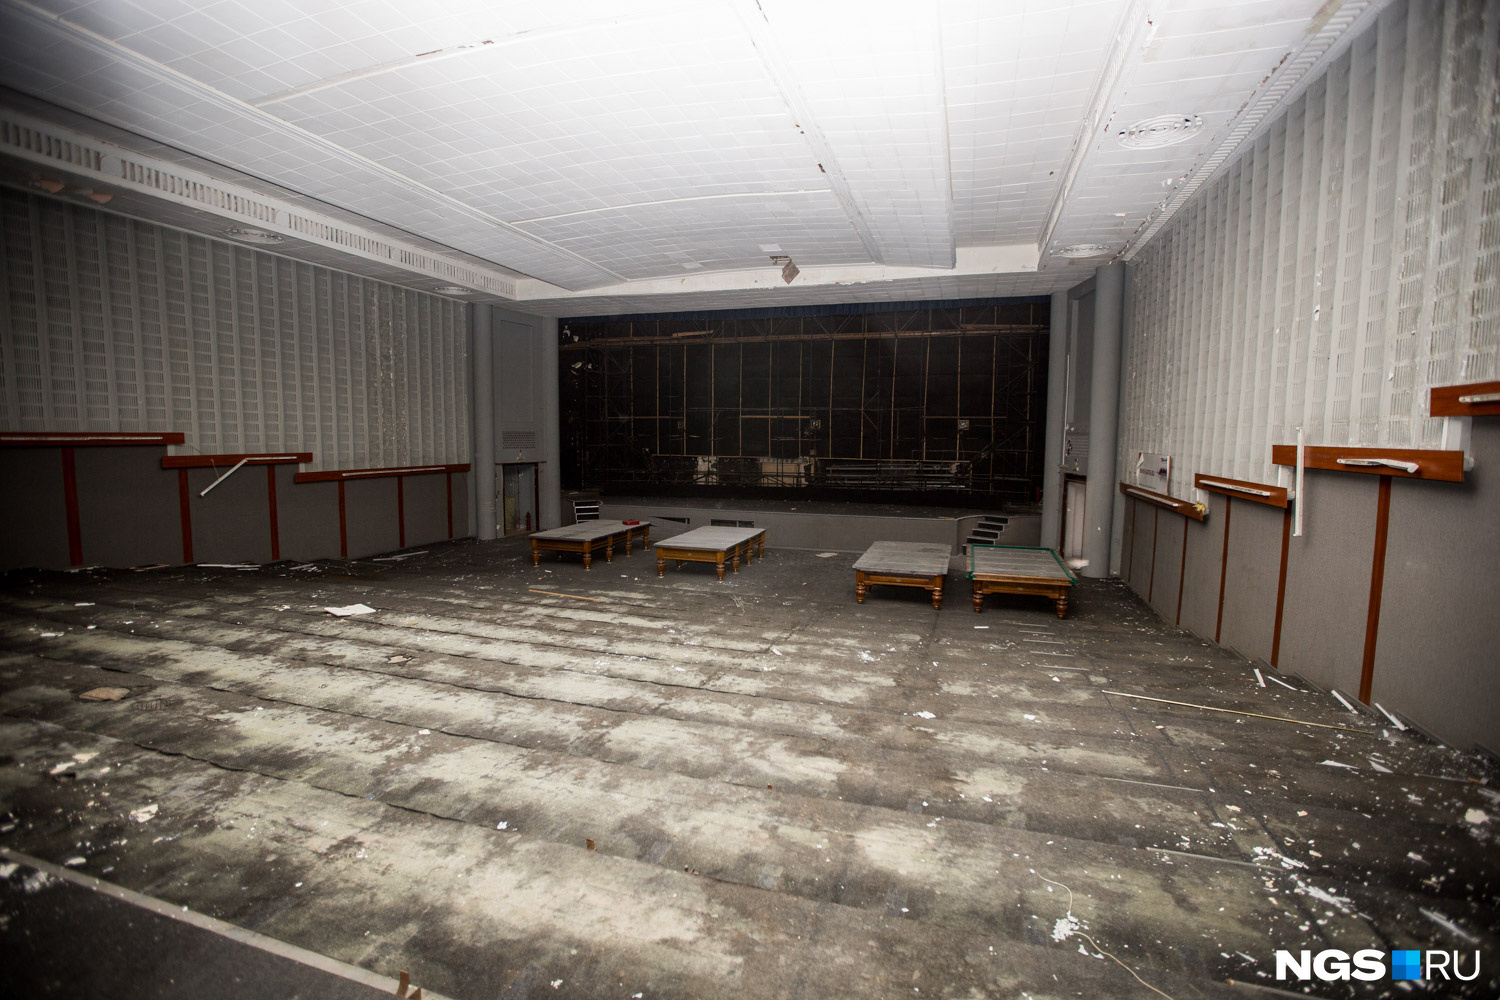 Пустой зрительный зал с бильярдными столами у экрана